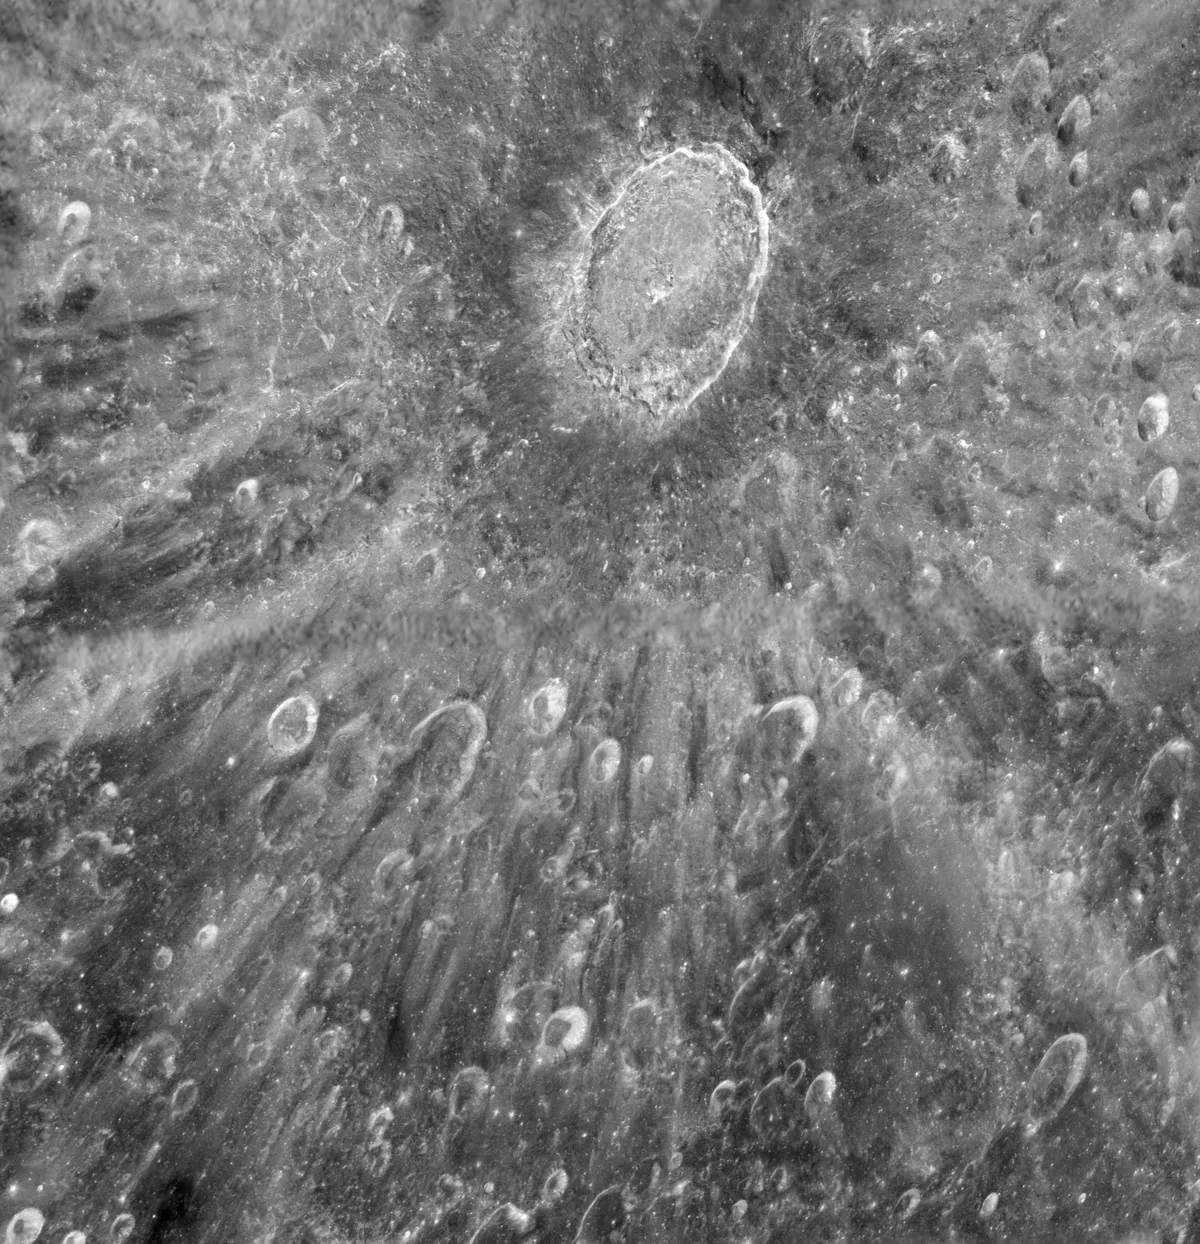 Crater Tycho, as seen by the Hubble Space Telescope. Credit: NASA, ESA, and D. Ehrenreich (Institut de Planétologie et d'Astrophysique de Grenoble (IPAG)/CNRS/Université Joseph Fourier)